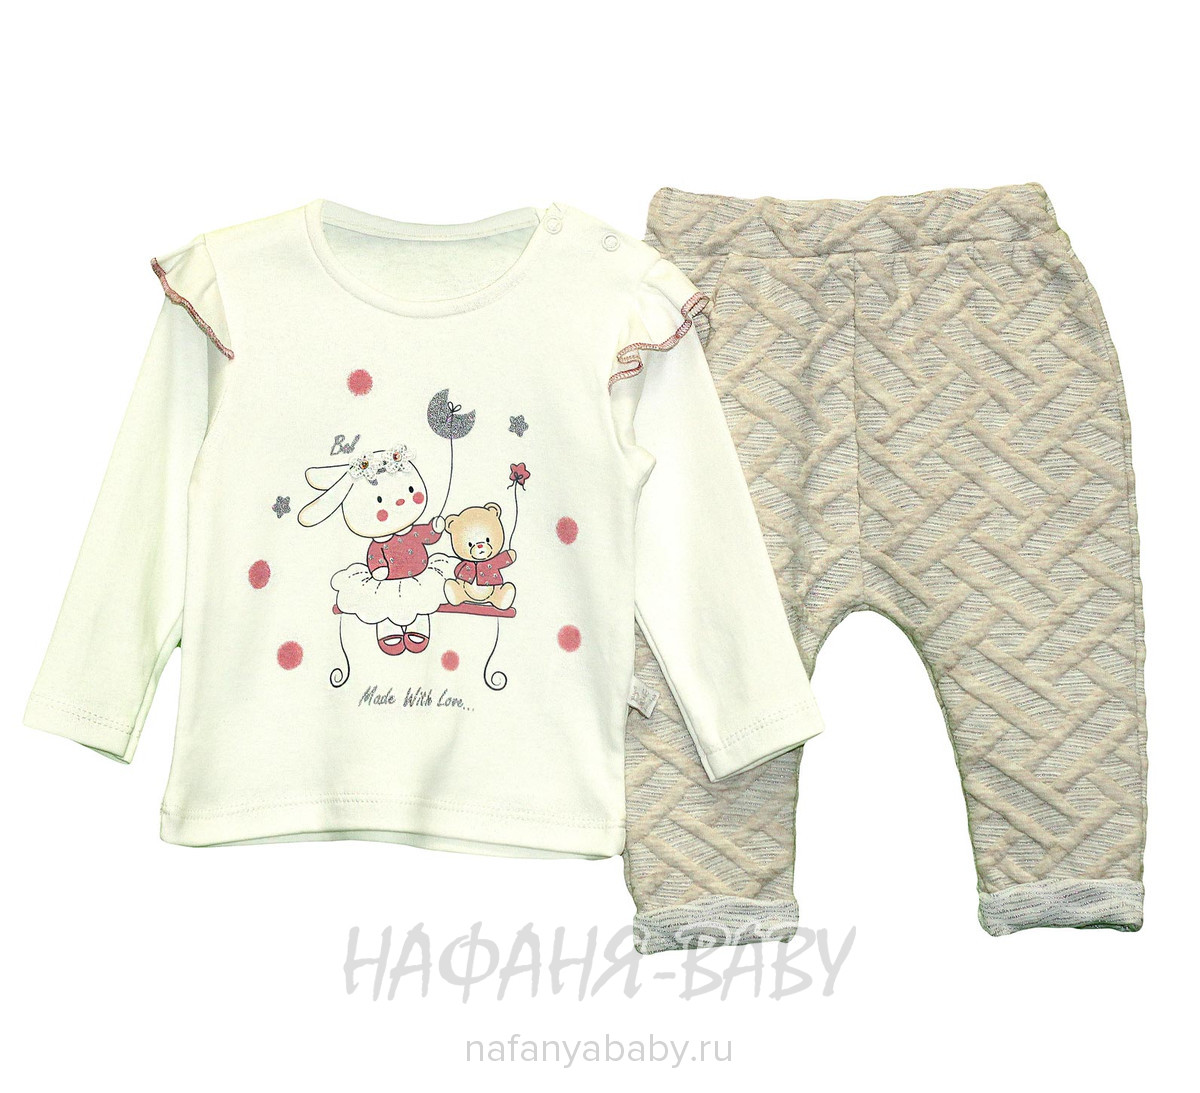 Комплект для малышей (кофта+брючки) BABYBAL, купить в интернет магазине Нафаня. арт: 2993, цвет бежевый